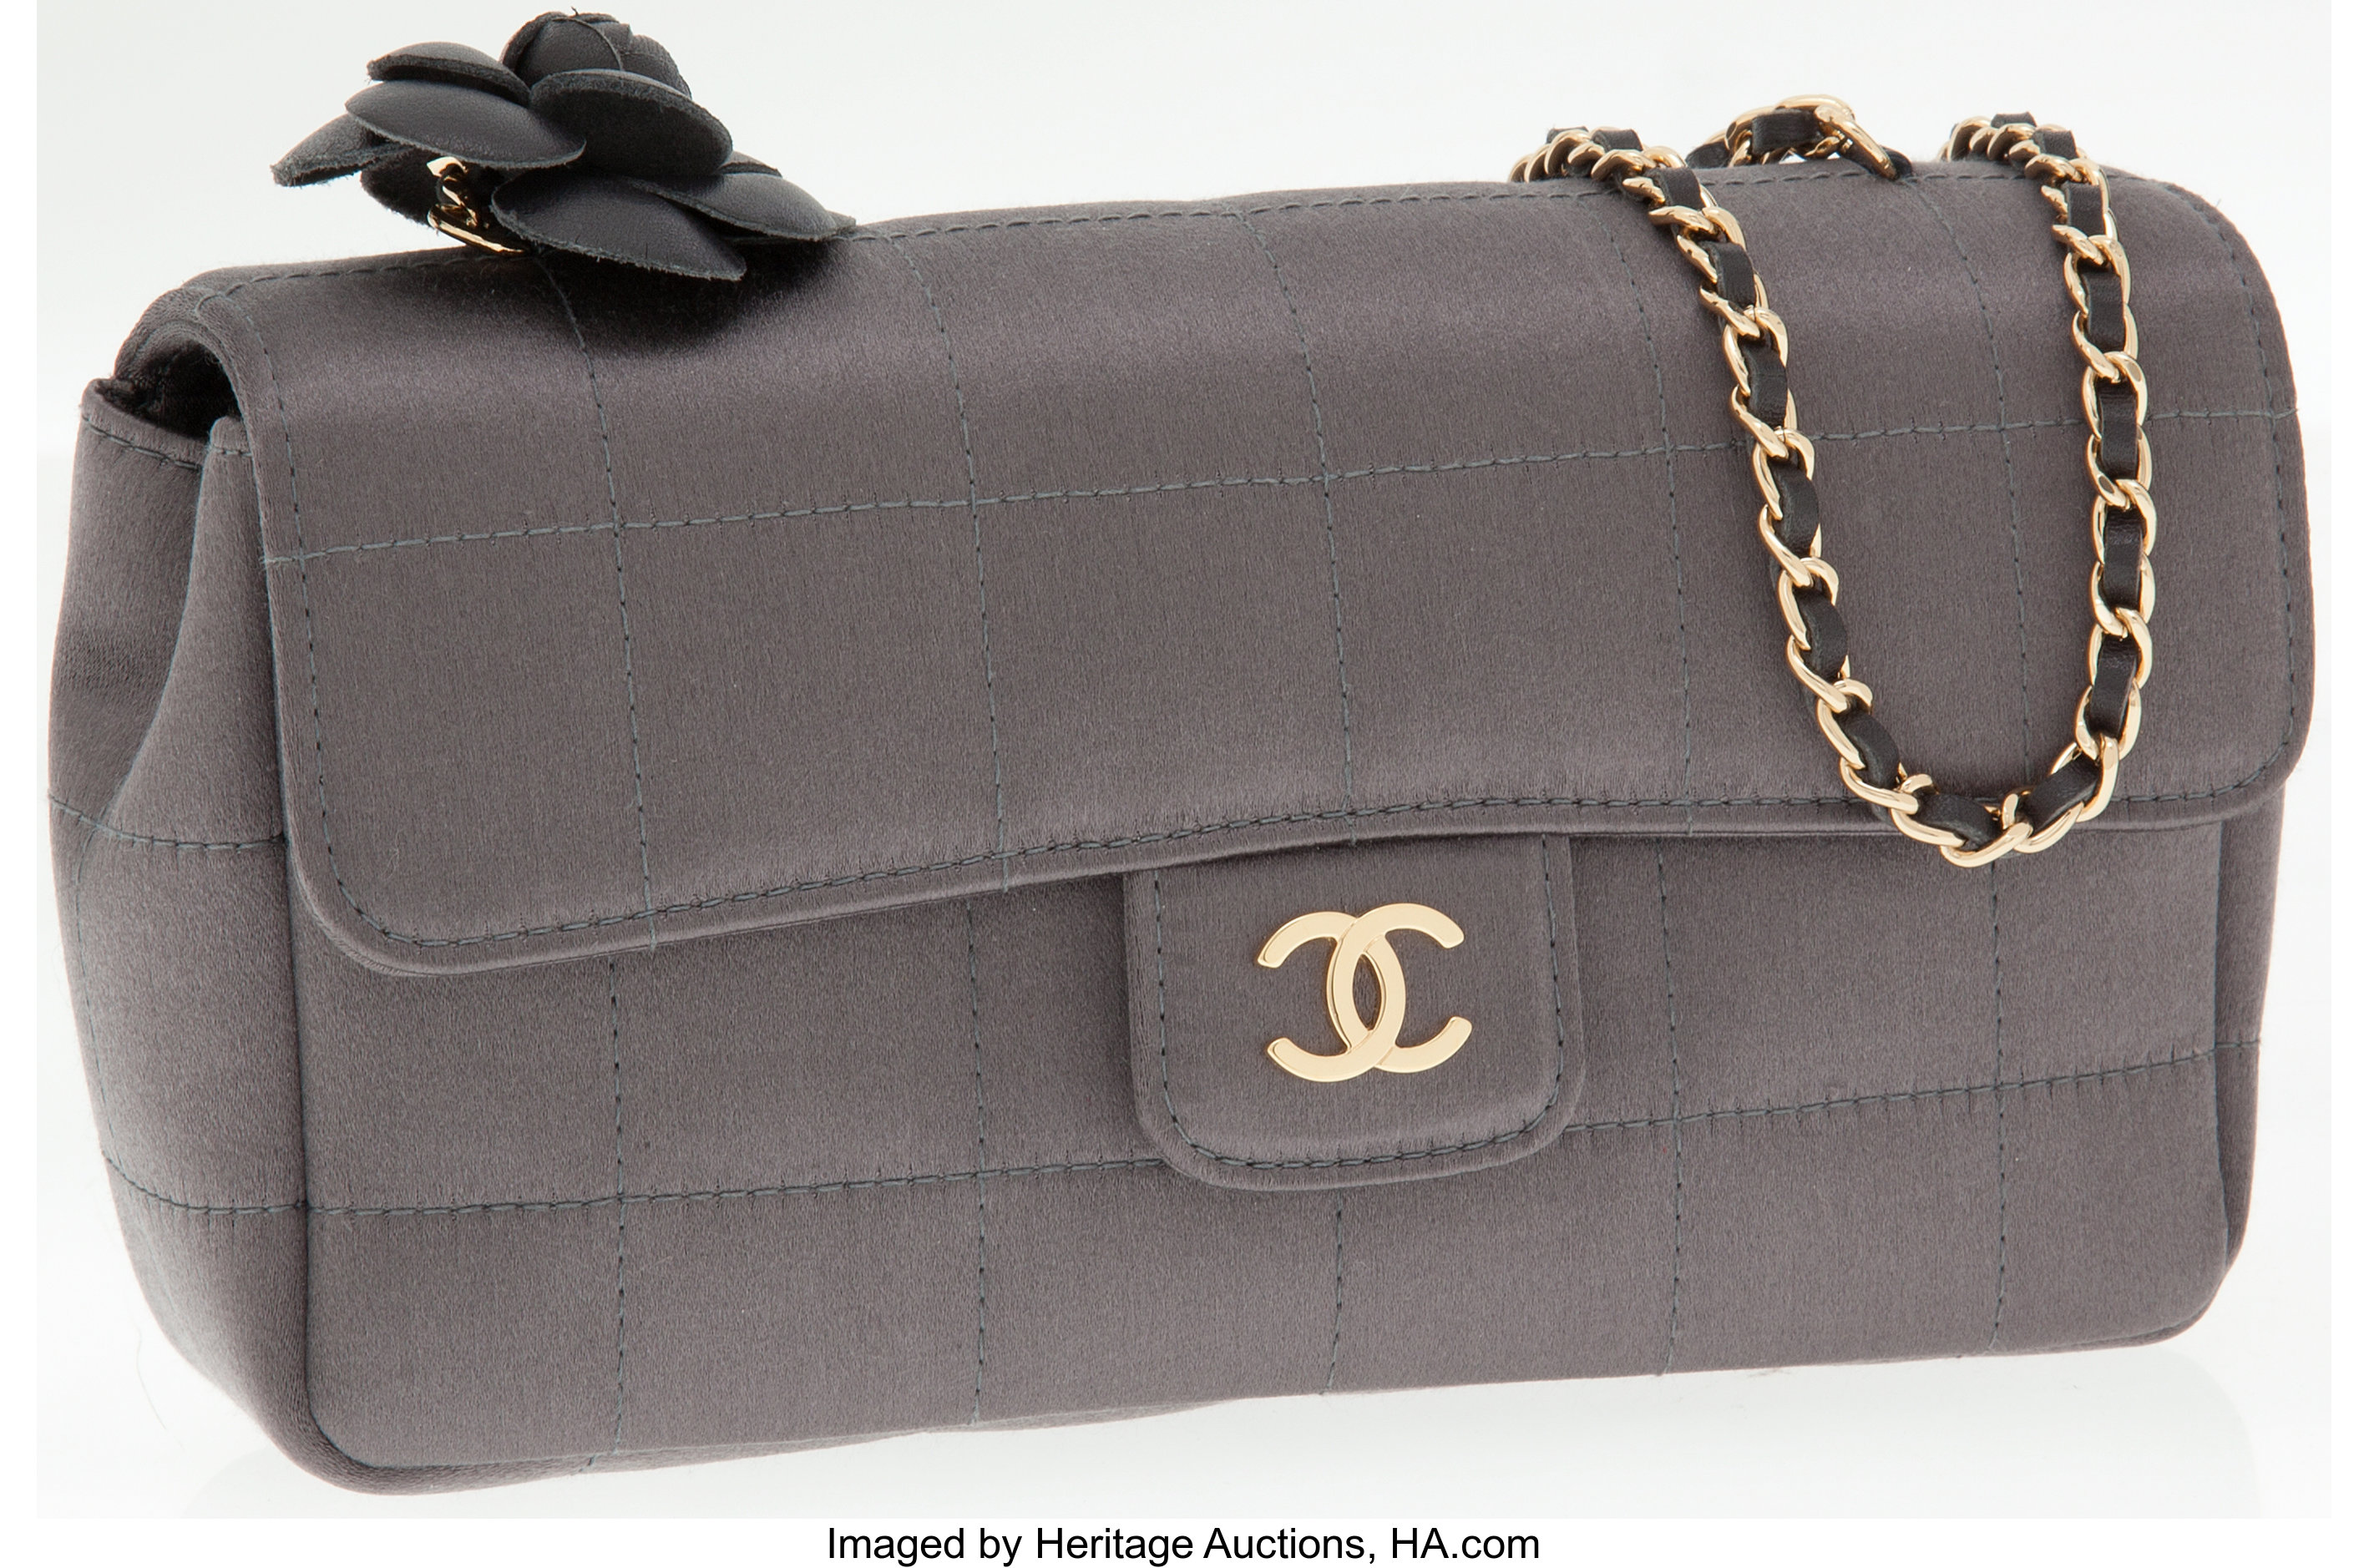 Lot - Chanel Classic Mini Satin Shoulder Flap Bag